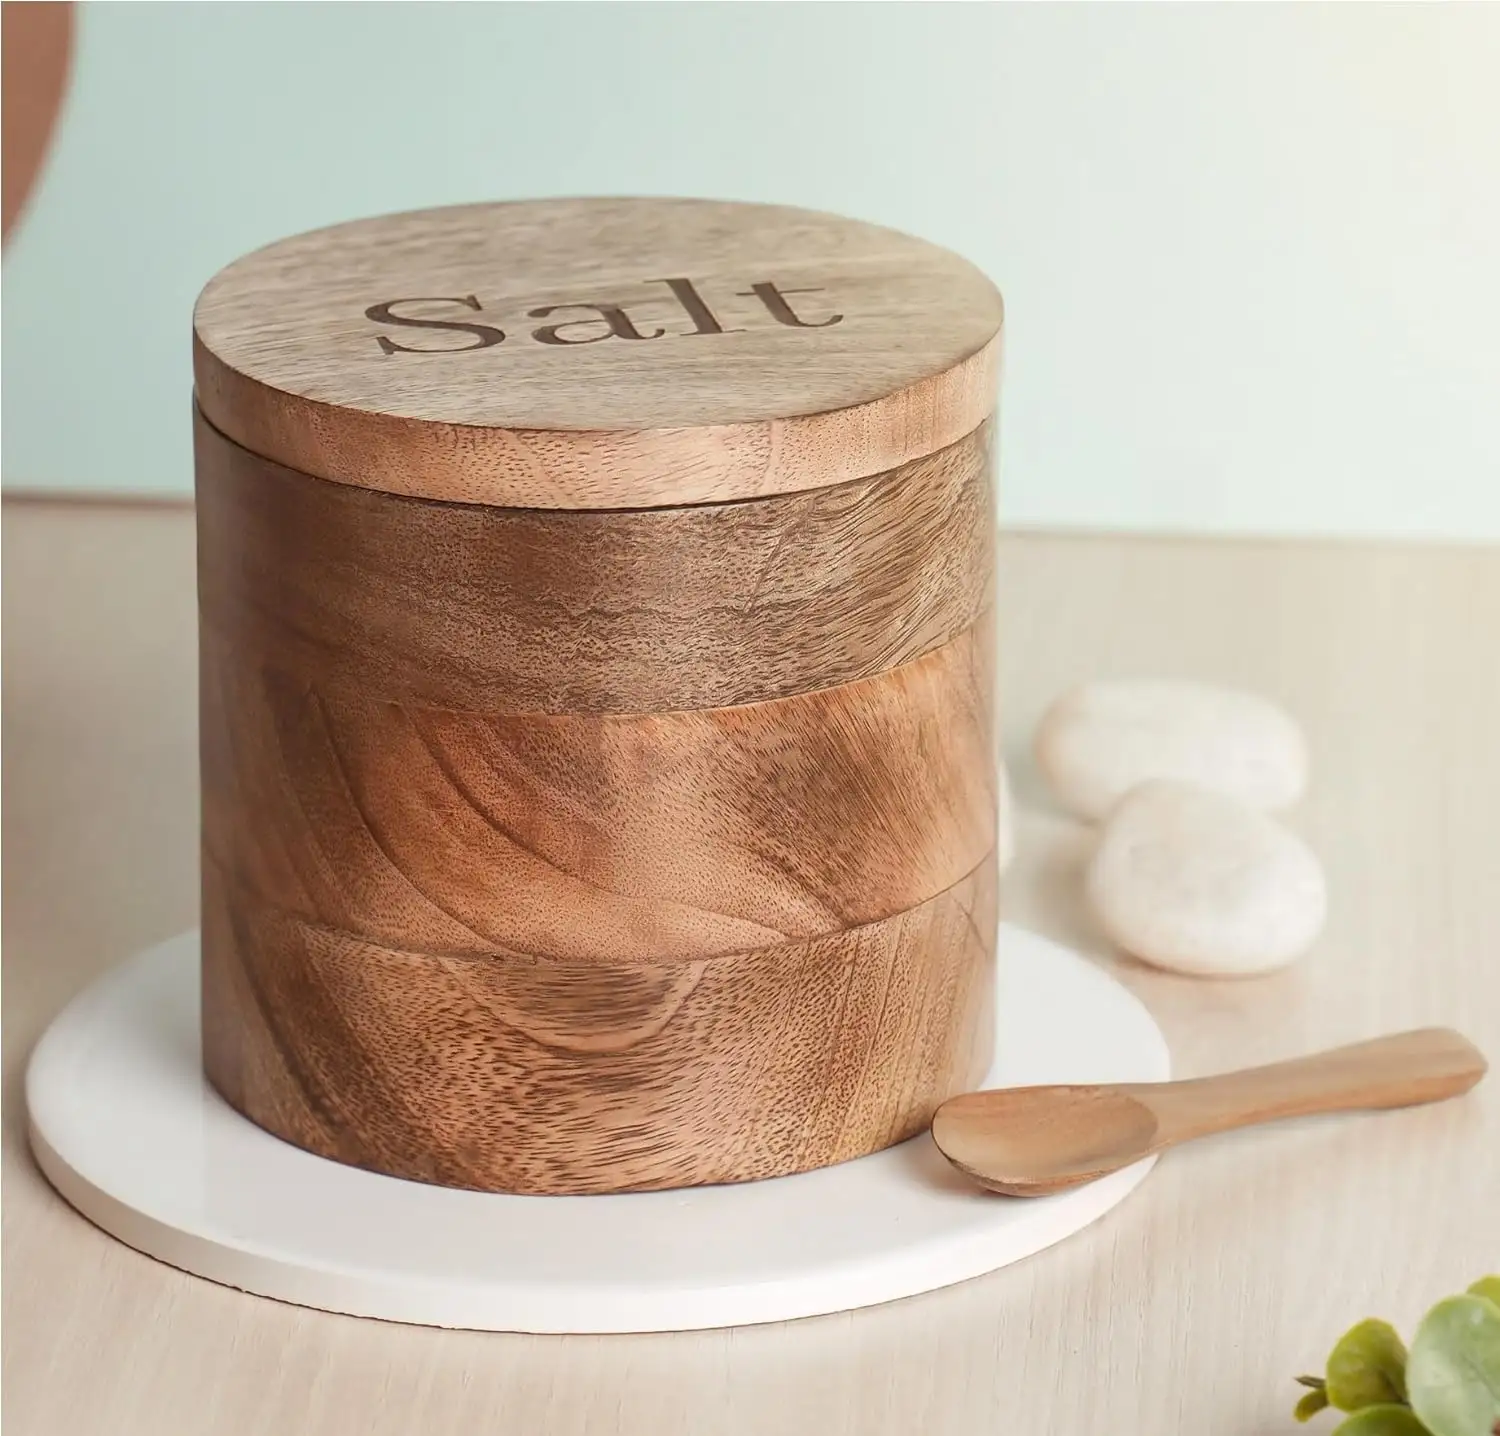 Nouveau pot rond de conteneurs de sel en bois pour les espèces alimentaires fruits secs conteneur de stockage pot maison hôtel restaurant cuisine décoration